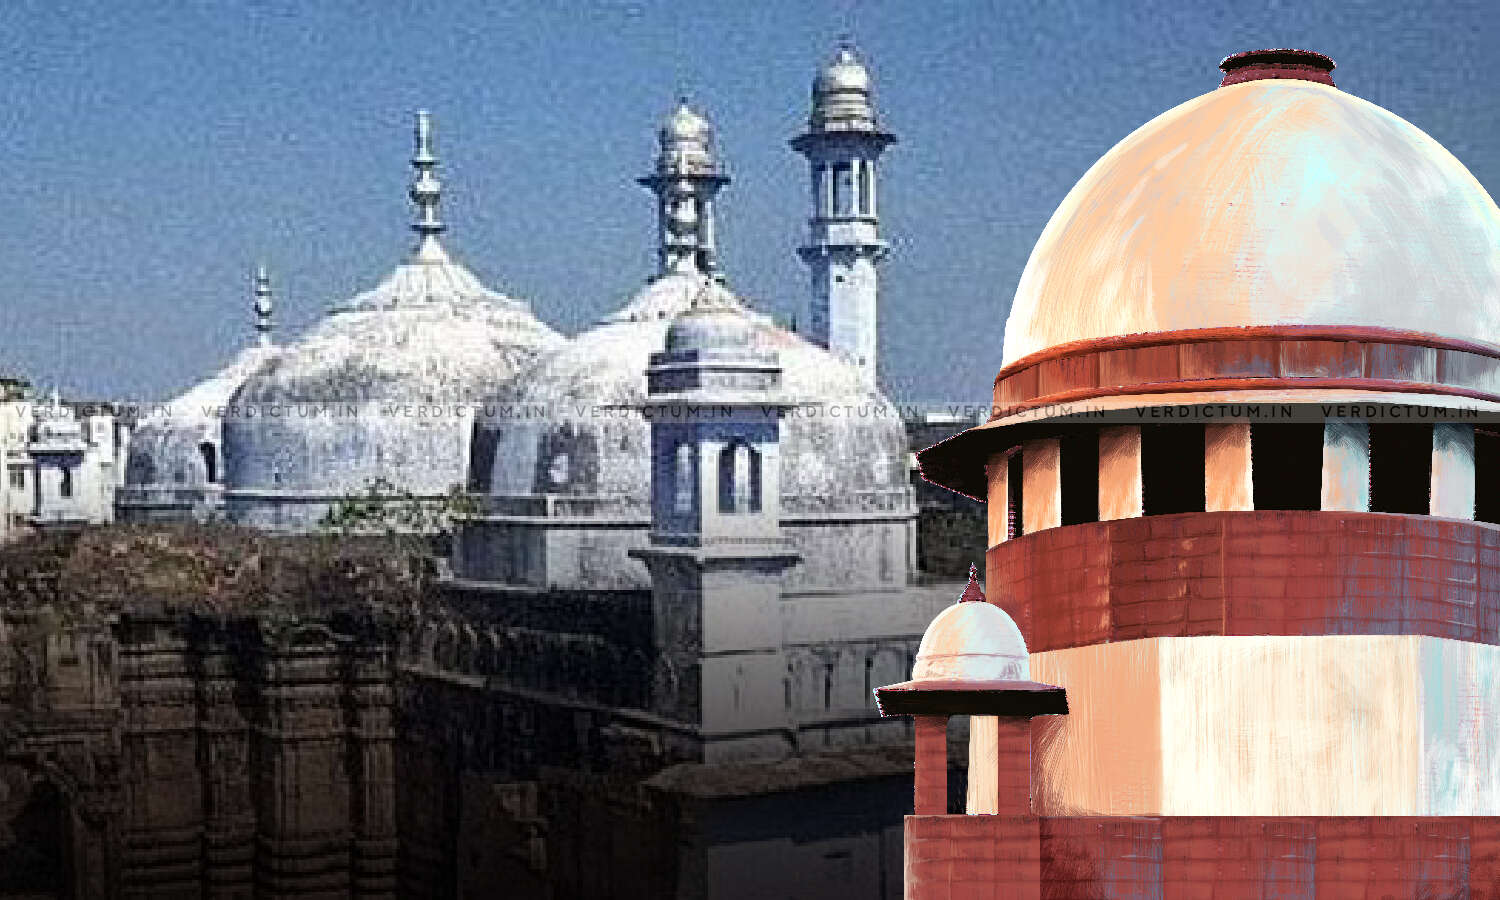 ہندو فریق کو بڑا جھٹکا، گیانواپی مسجد کے وضو خانے کے فوارہ کی کاربن ڈیٹنگ نہیں ہوگی، عدالت نے اپیل خارج کر دی